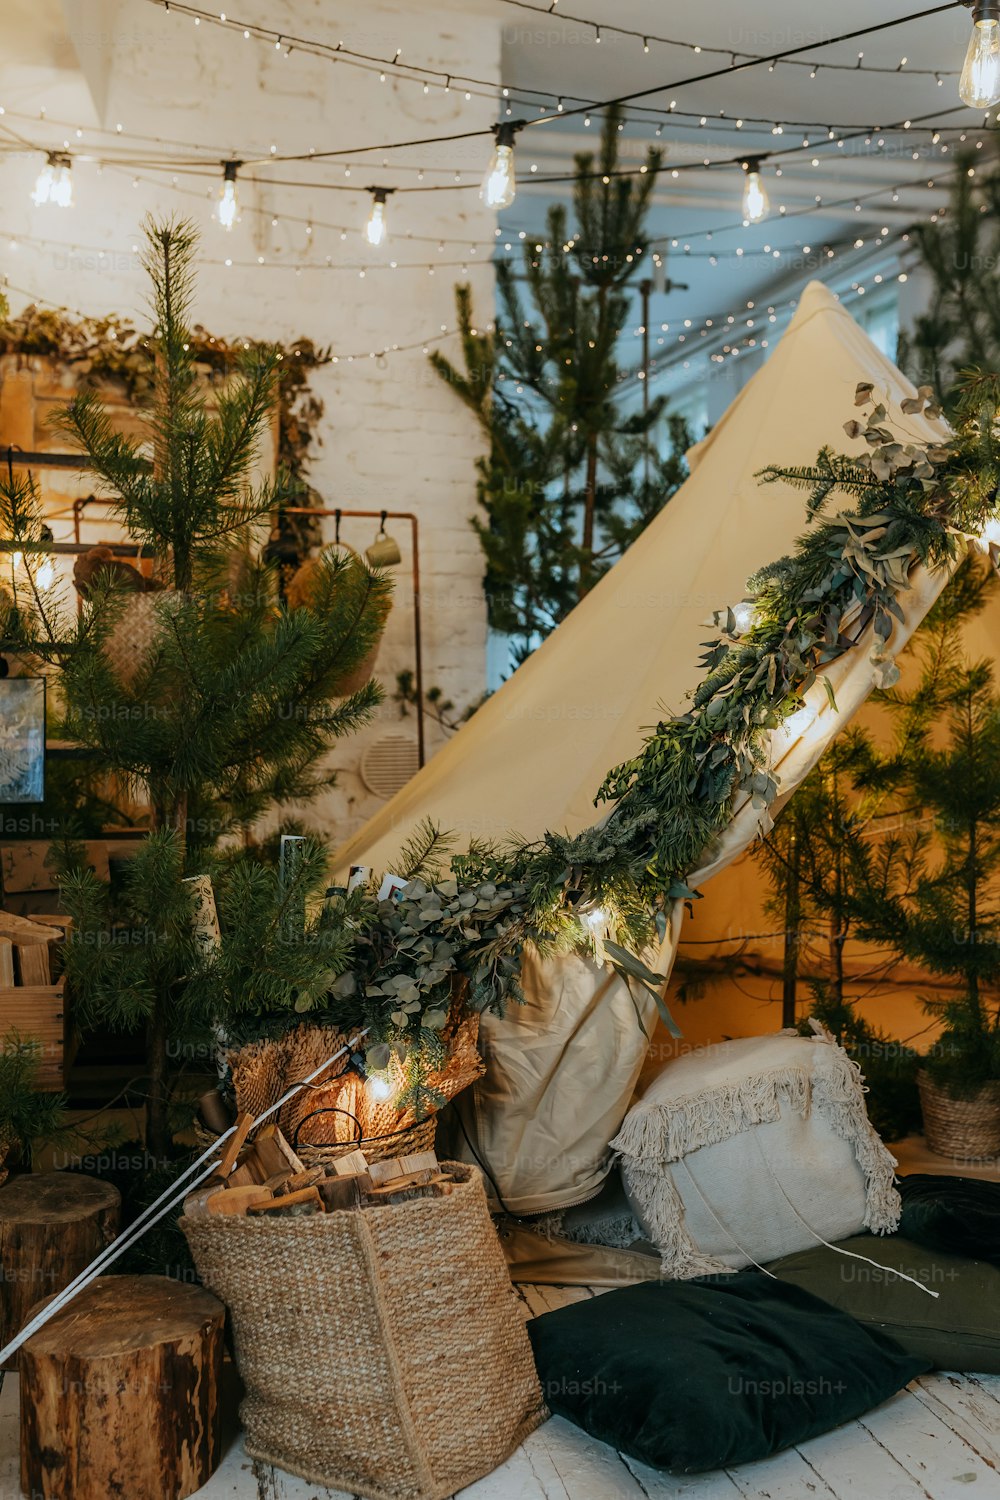 Una tenda è allestita in una stanza con alberi di Natale